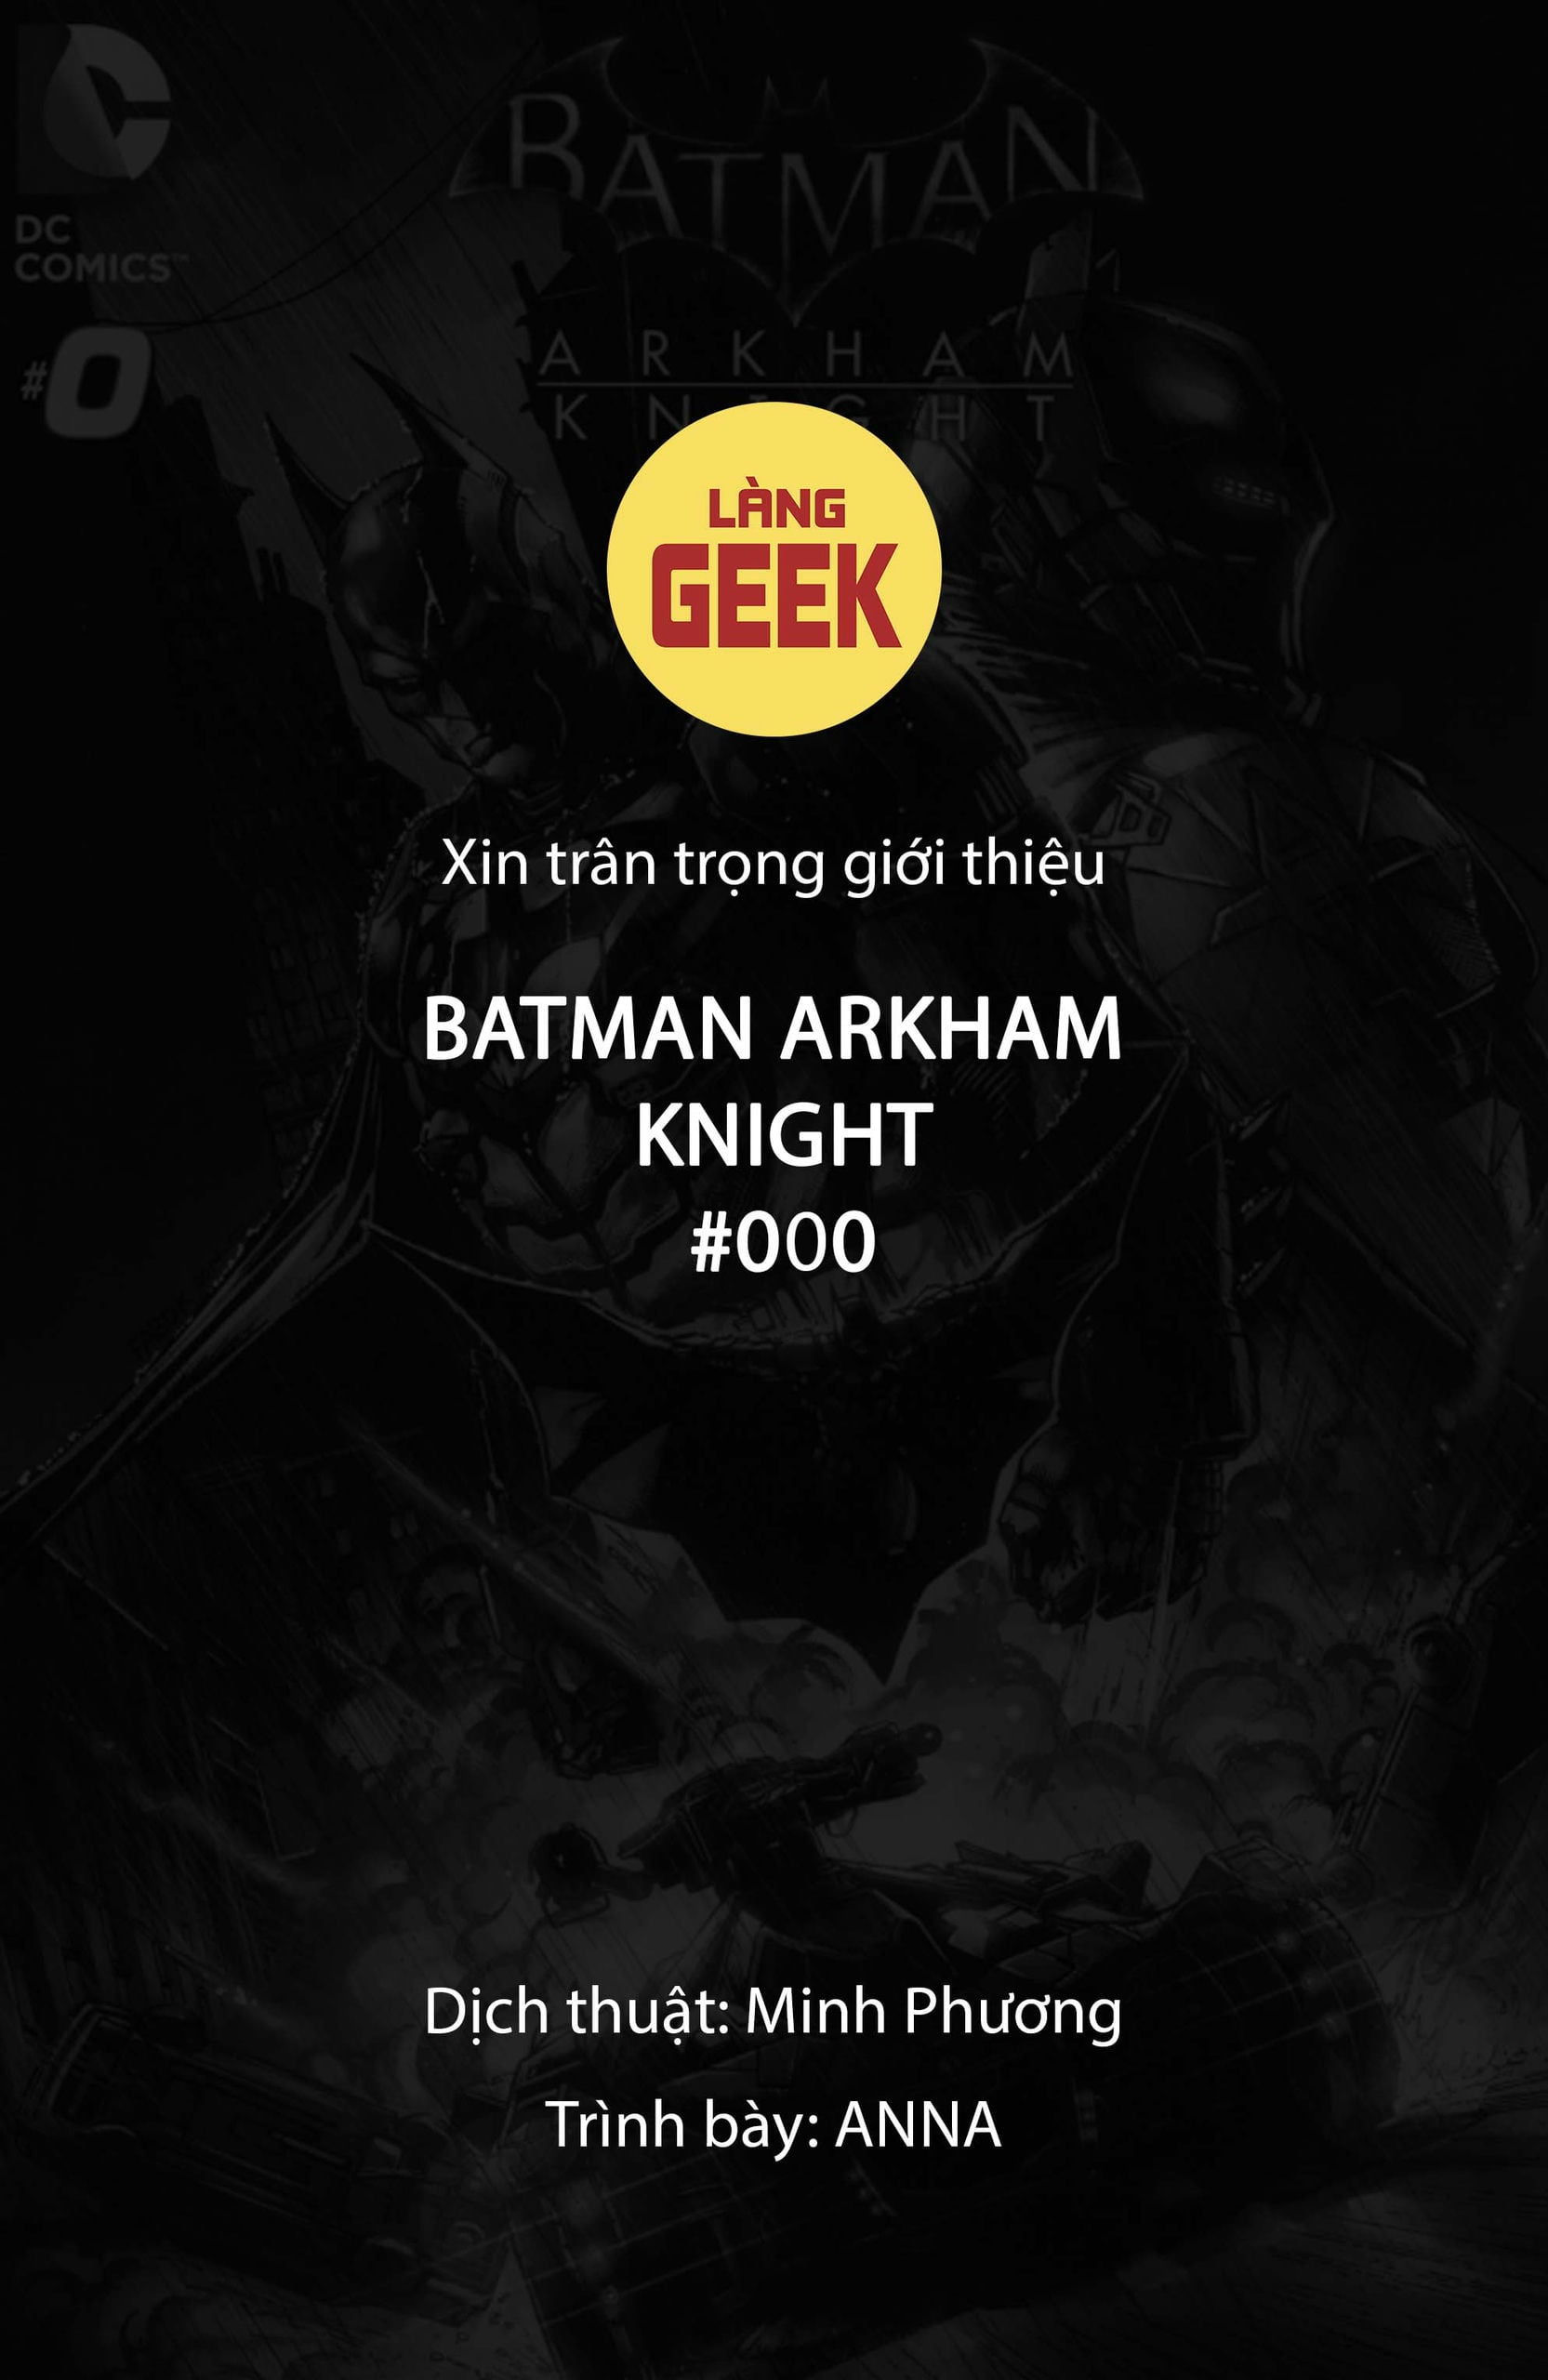 https://langgeek.net/wp-content/webpc-passthru.php?src=https://langgeek.net/wp-content/uploads/2023/05/Batman-Arkham-Knight-000-002.jpg&nocache=1